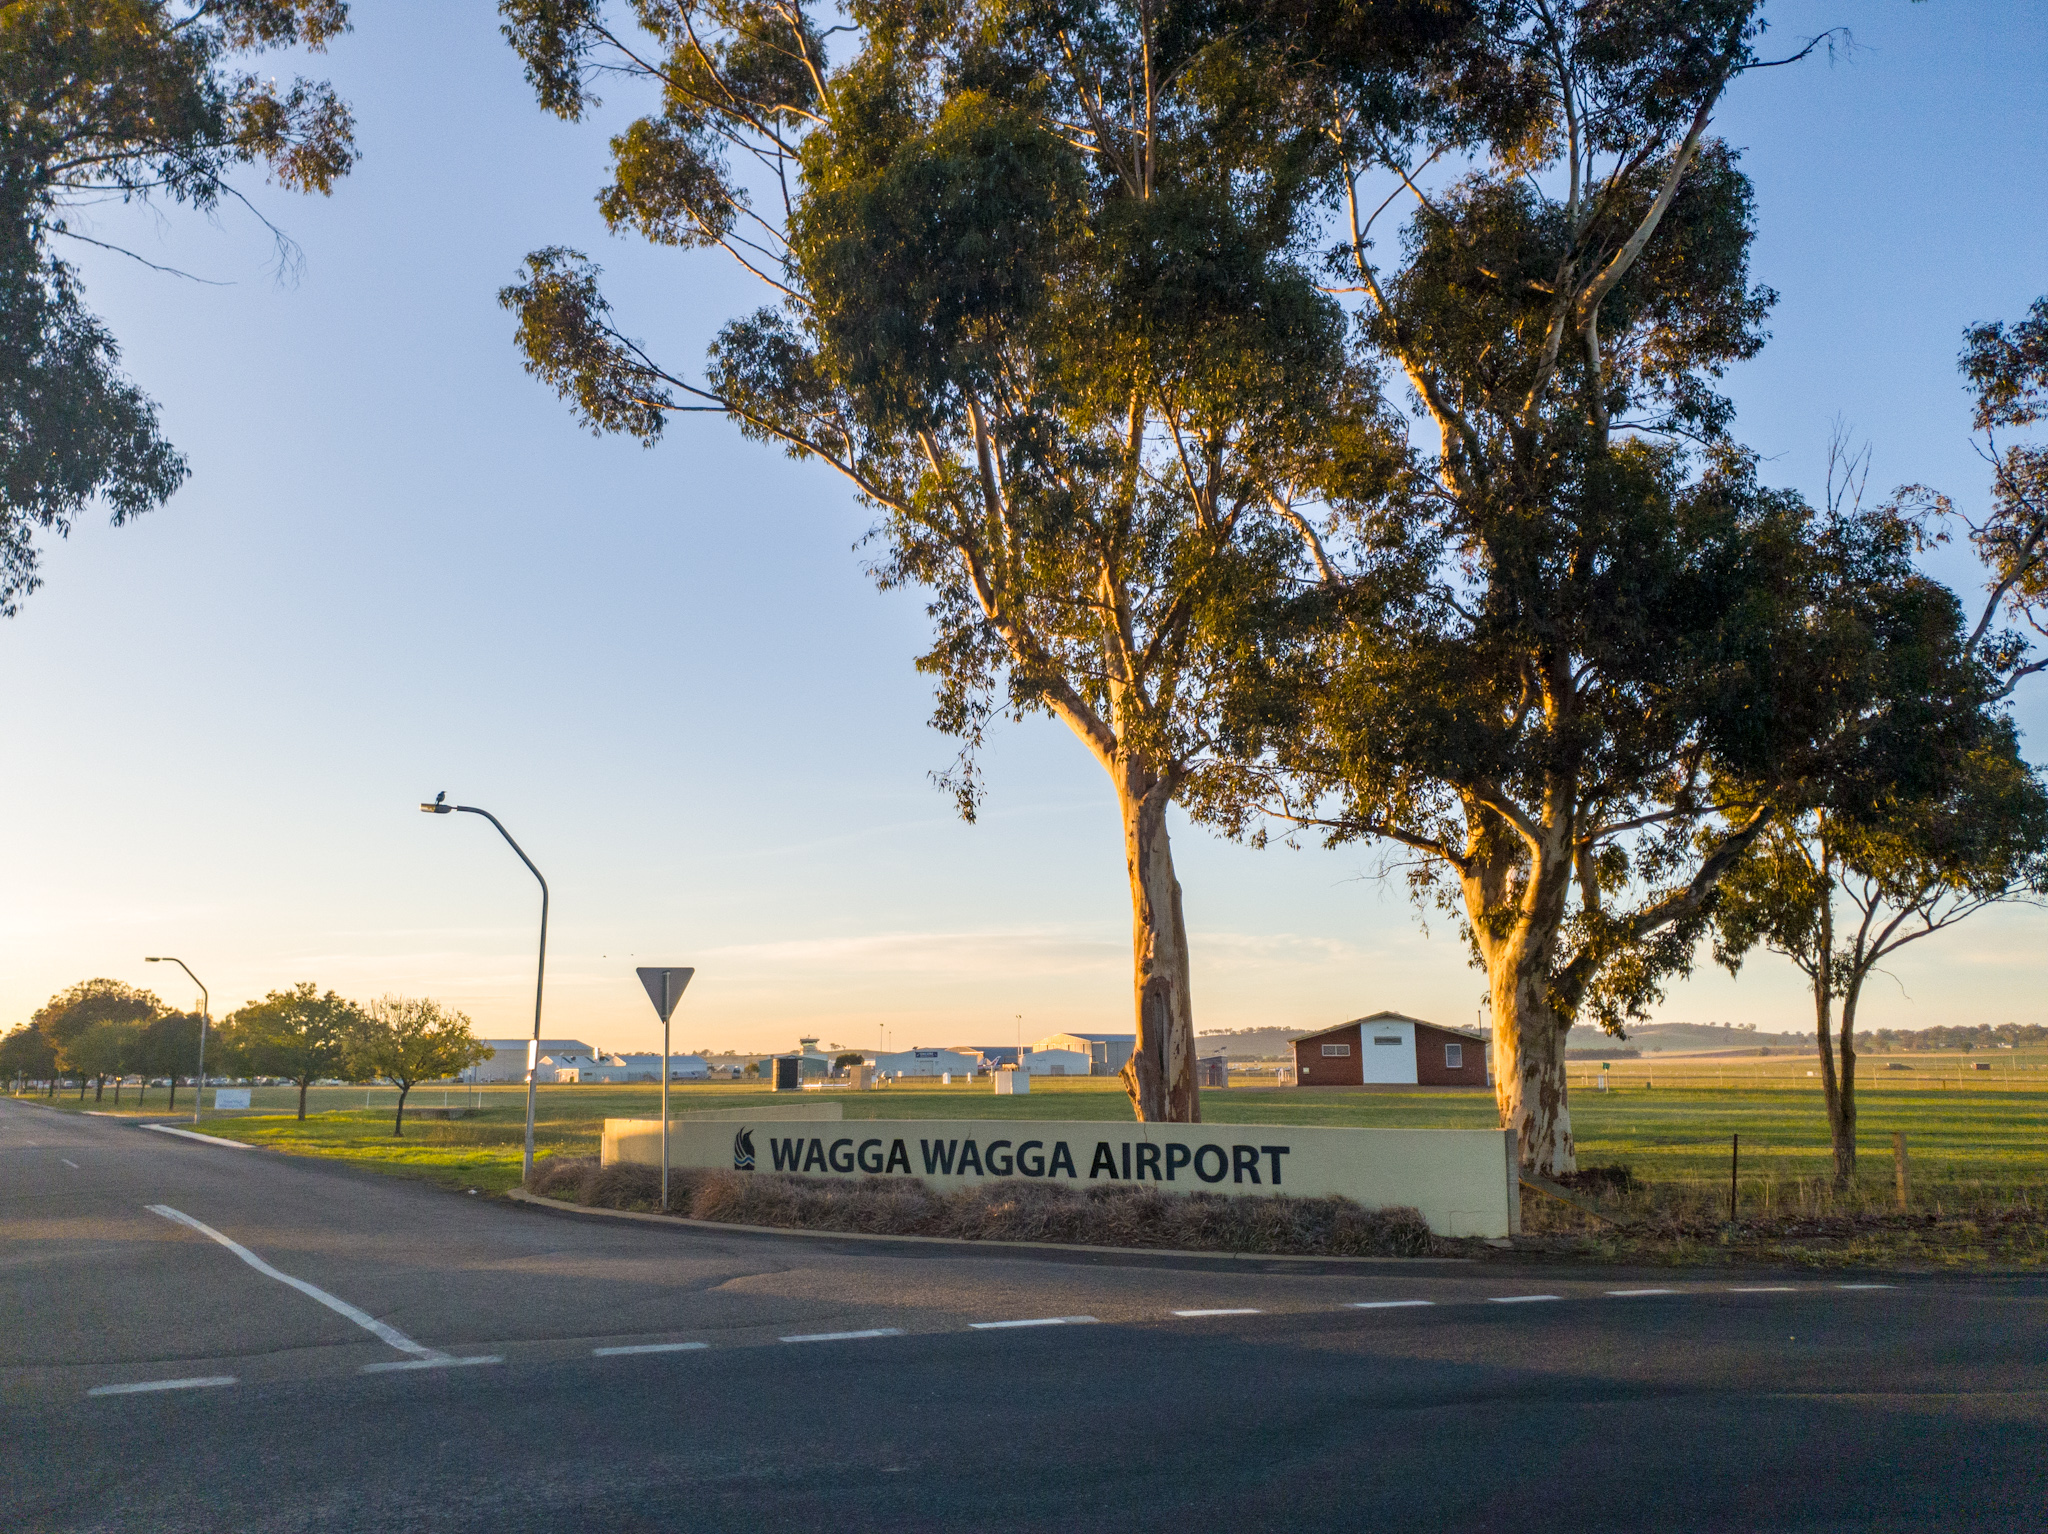 Wagga Wagga Airport